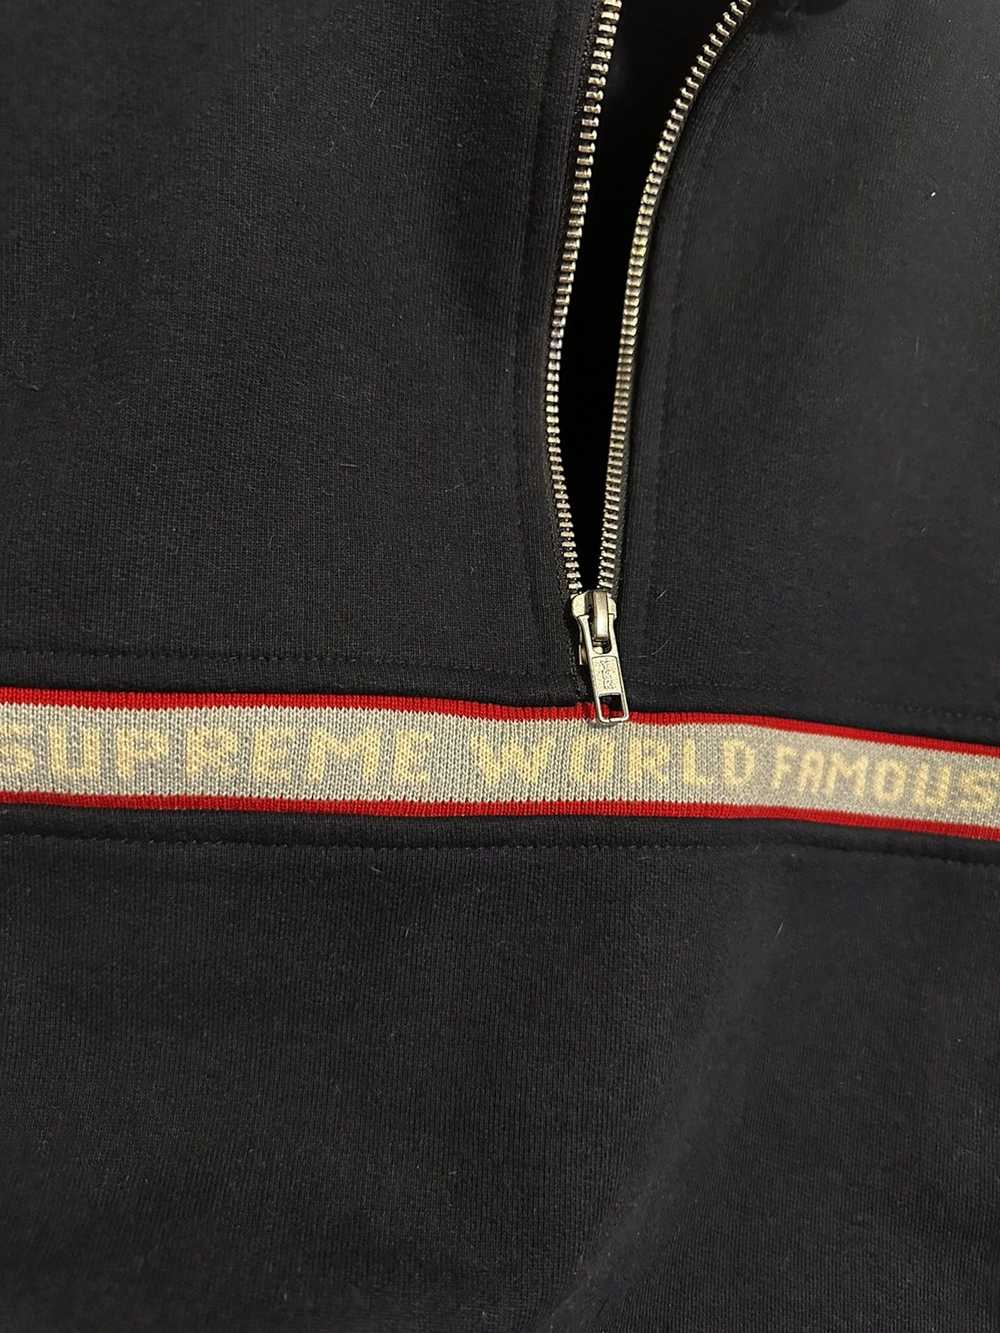 Supreme Supreme World Famous Half Zip - image 7